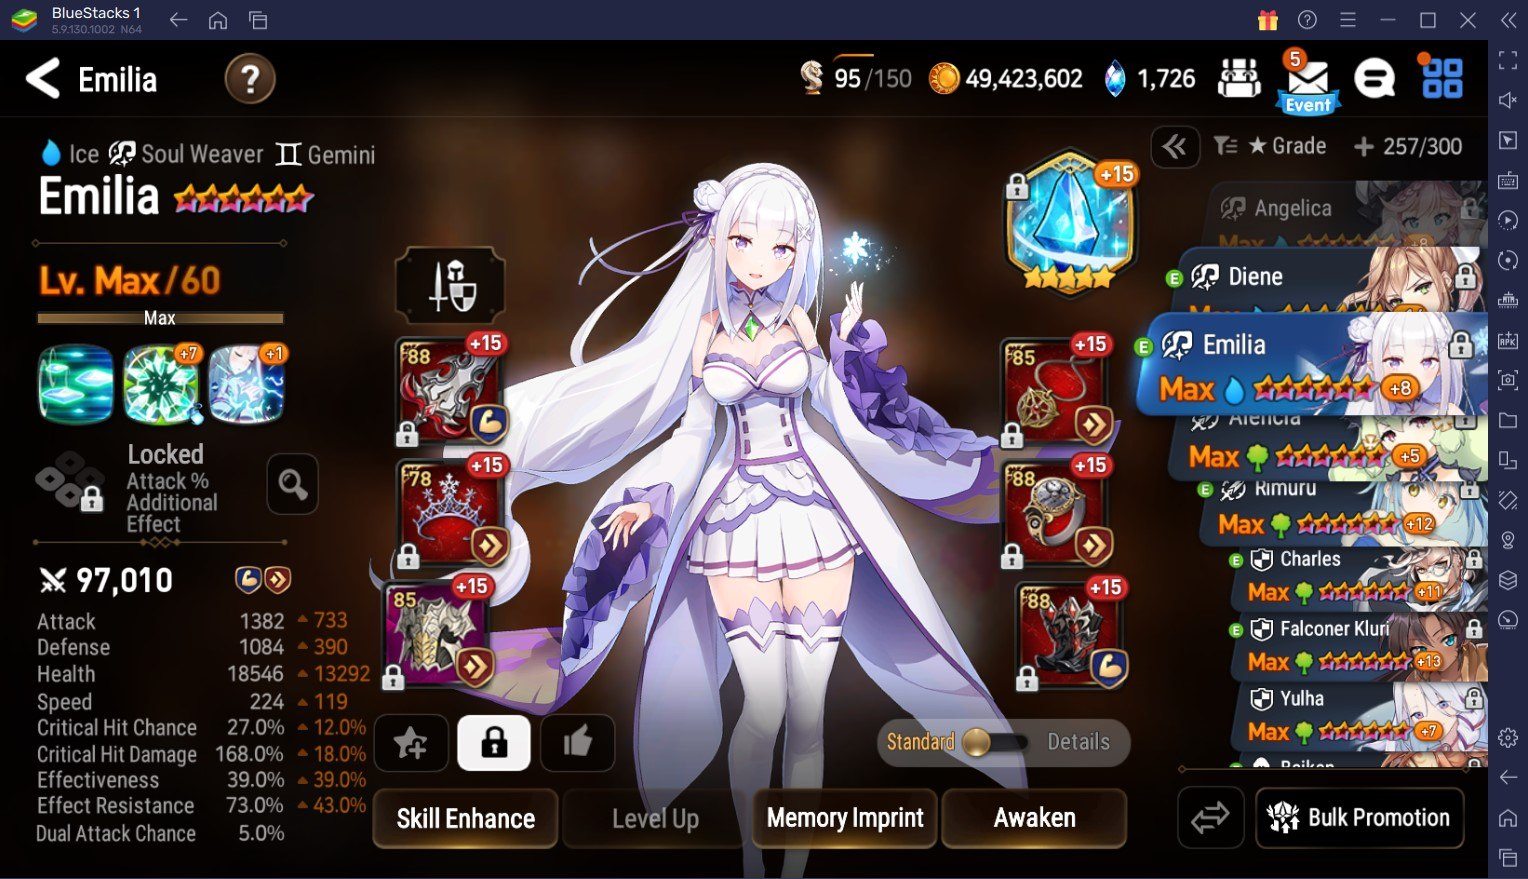 Epic Seven Emilia Helden-Guide - Fähigkeiten, Builds, Teamempfehlungen und mehr